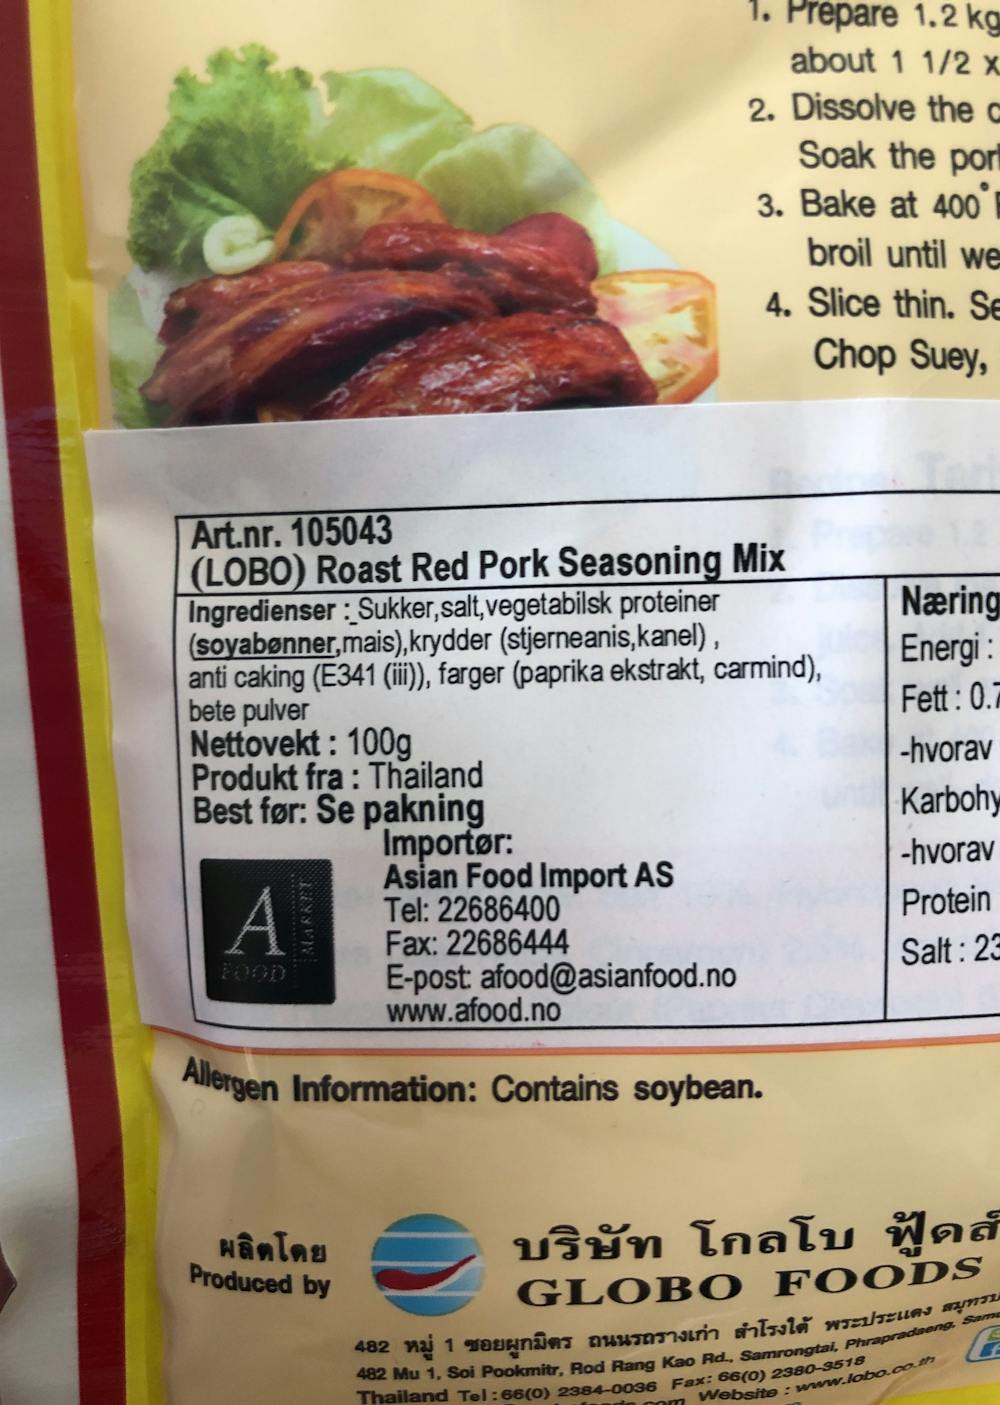 Ingrediensliste - Roast red pork seasoning mix, Lobo